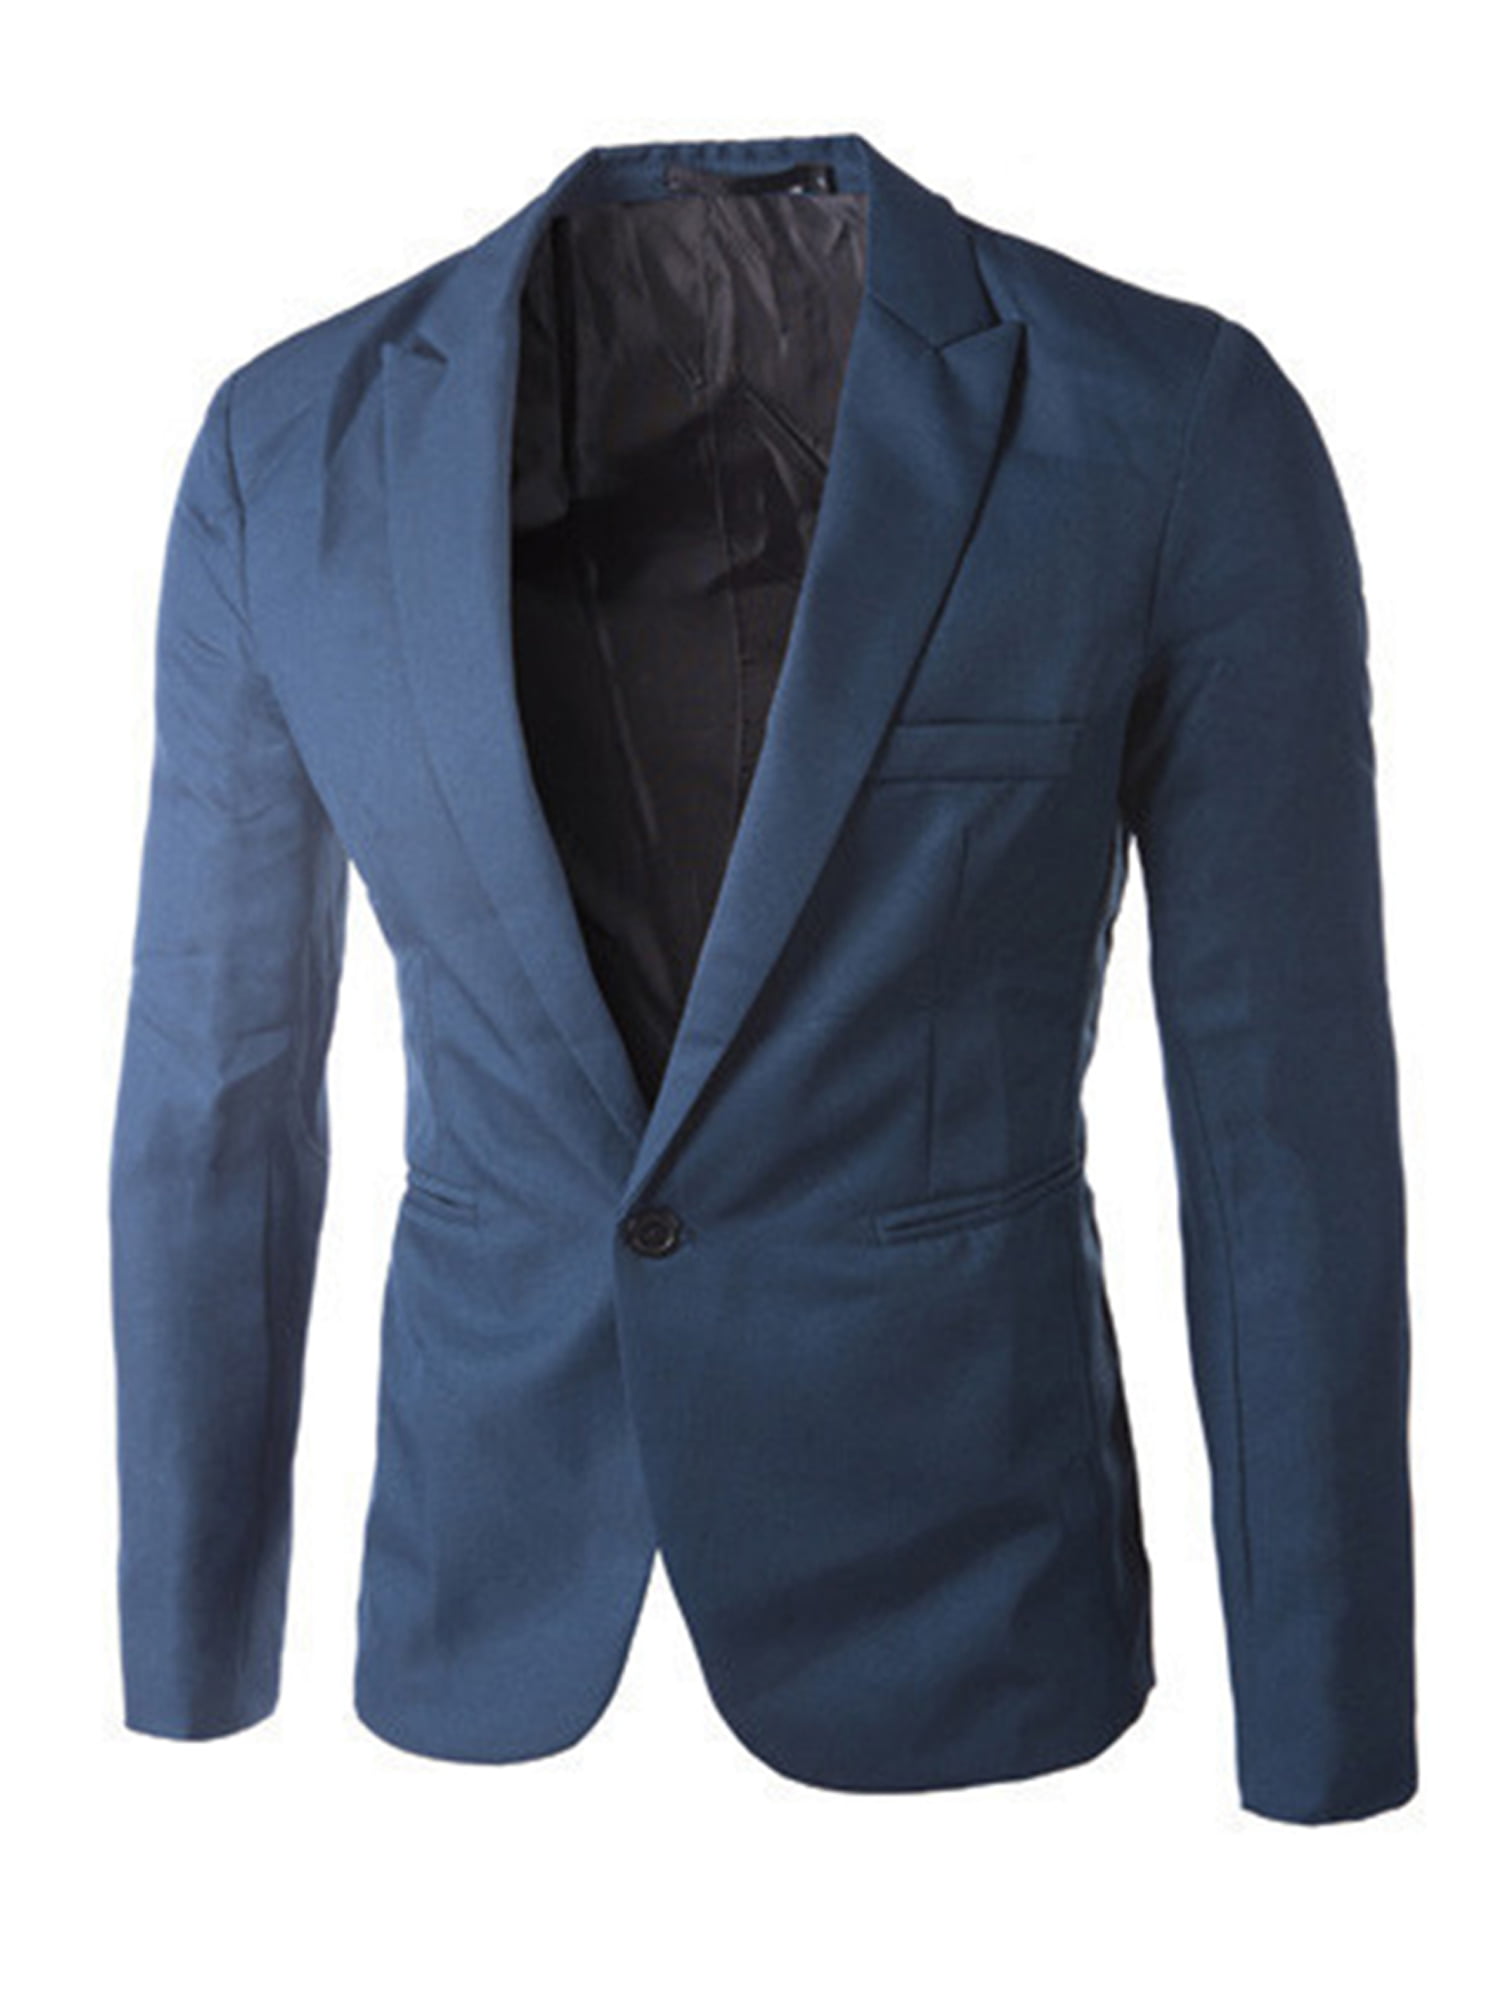 Lallc - Men's Formal Suit Blazer Coat Business Casual One Button Slim ...